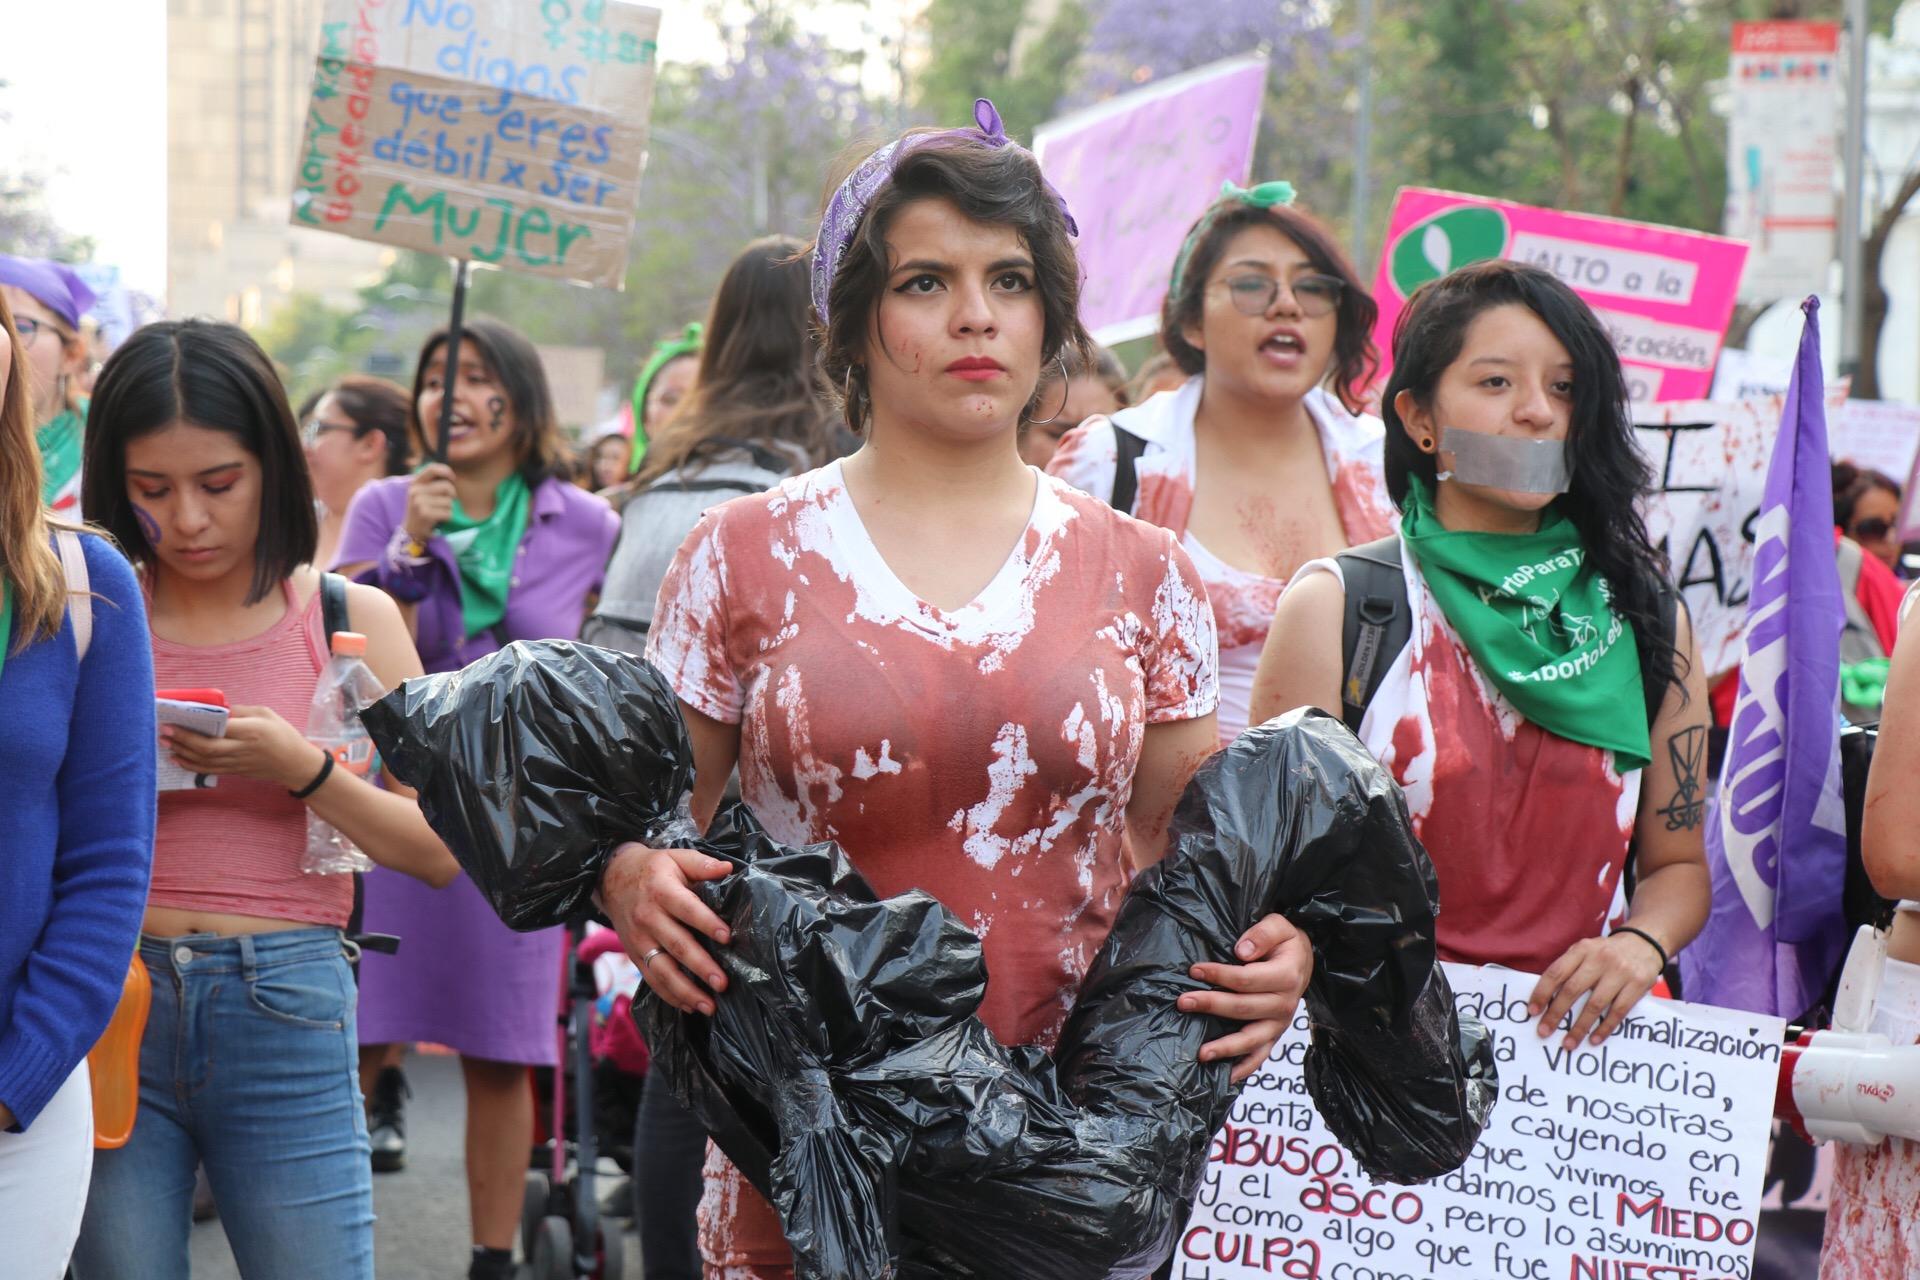 La marcha contra feminicidios, el machismo y la violencia en imágenes